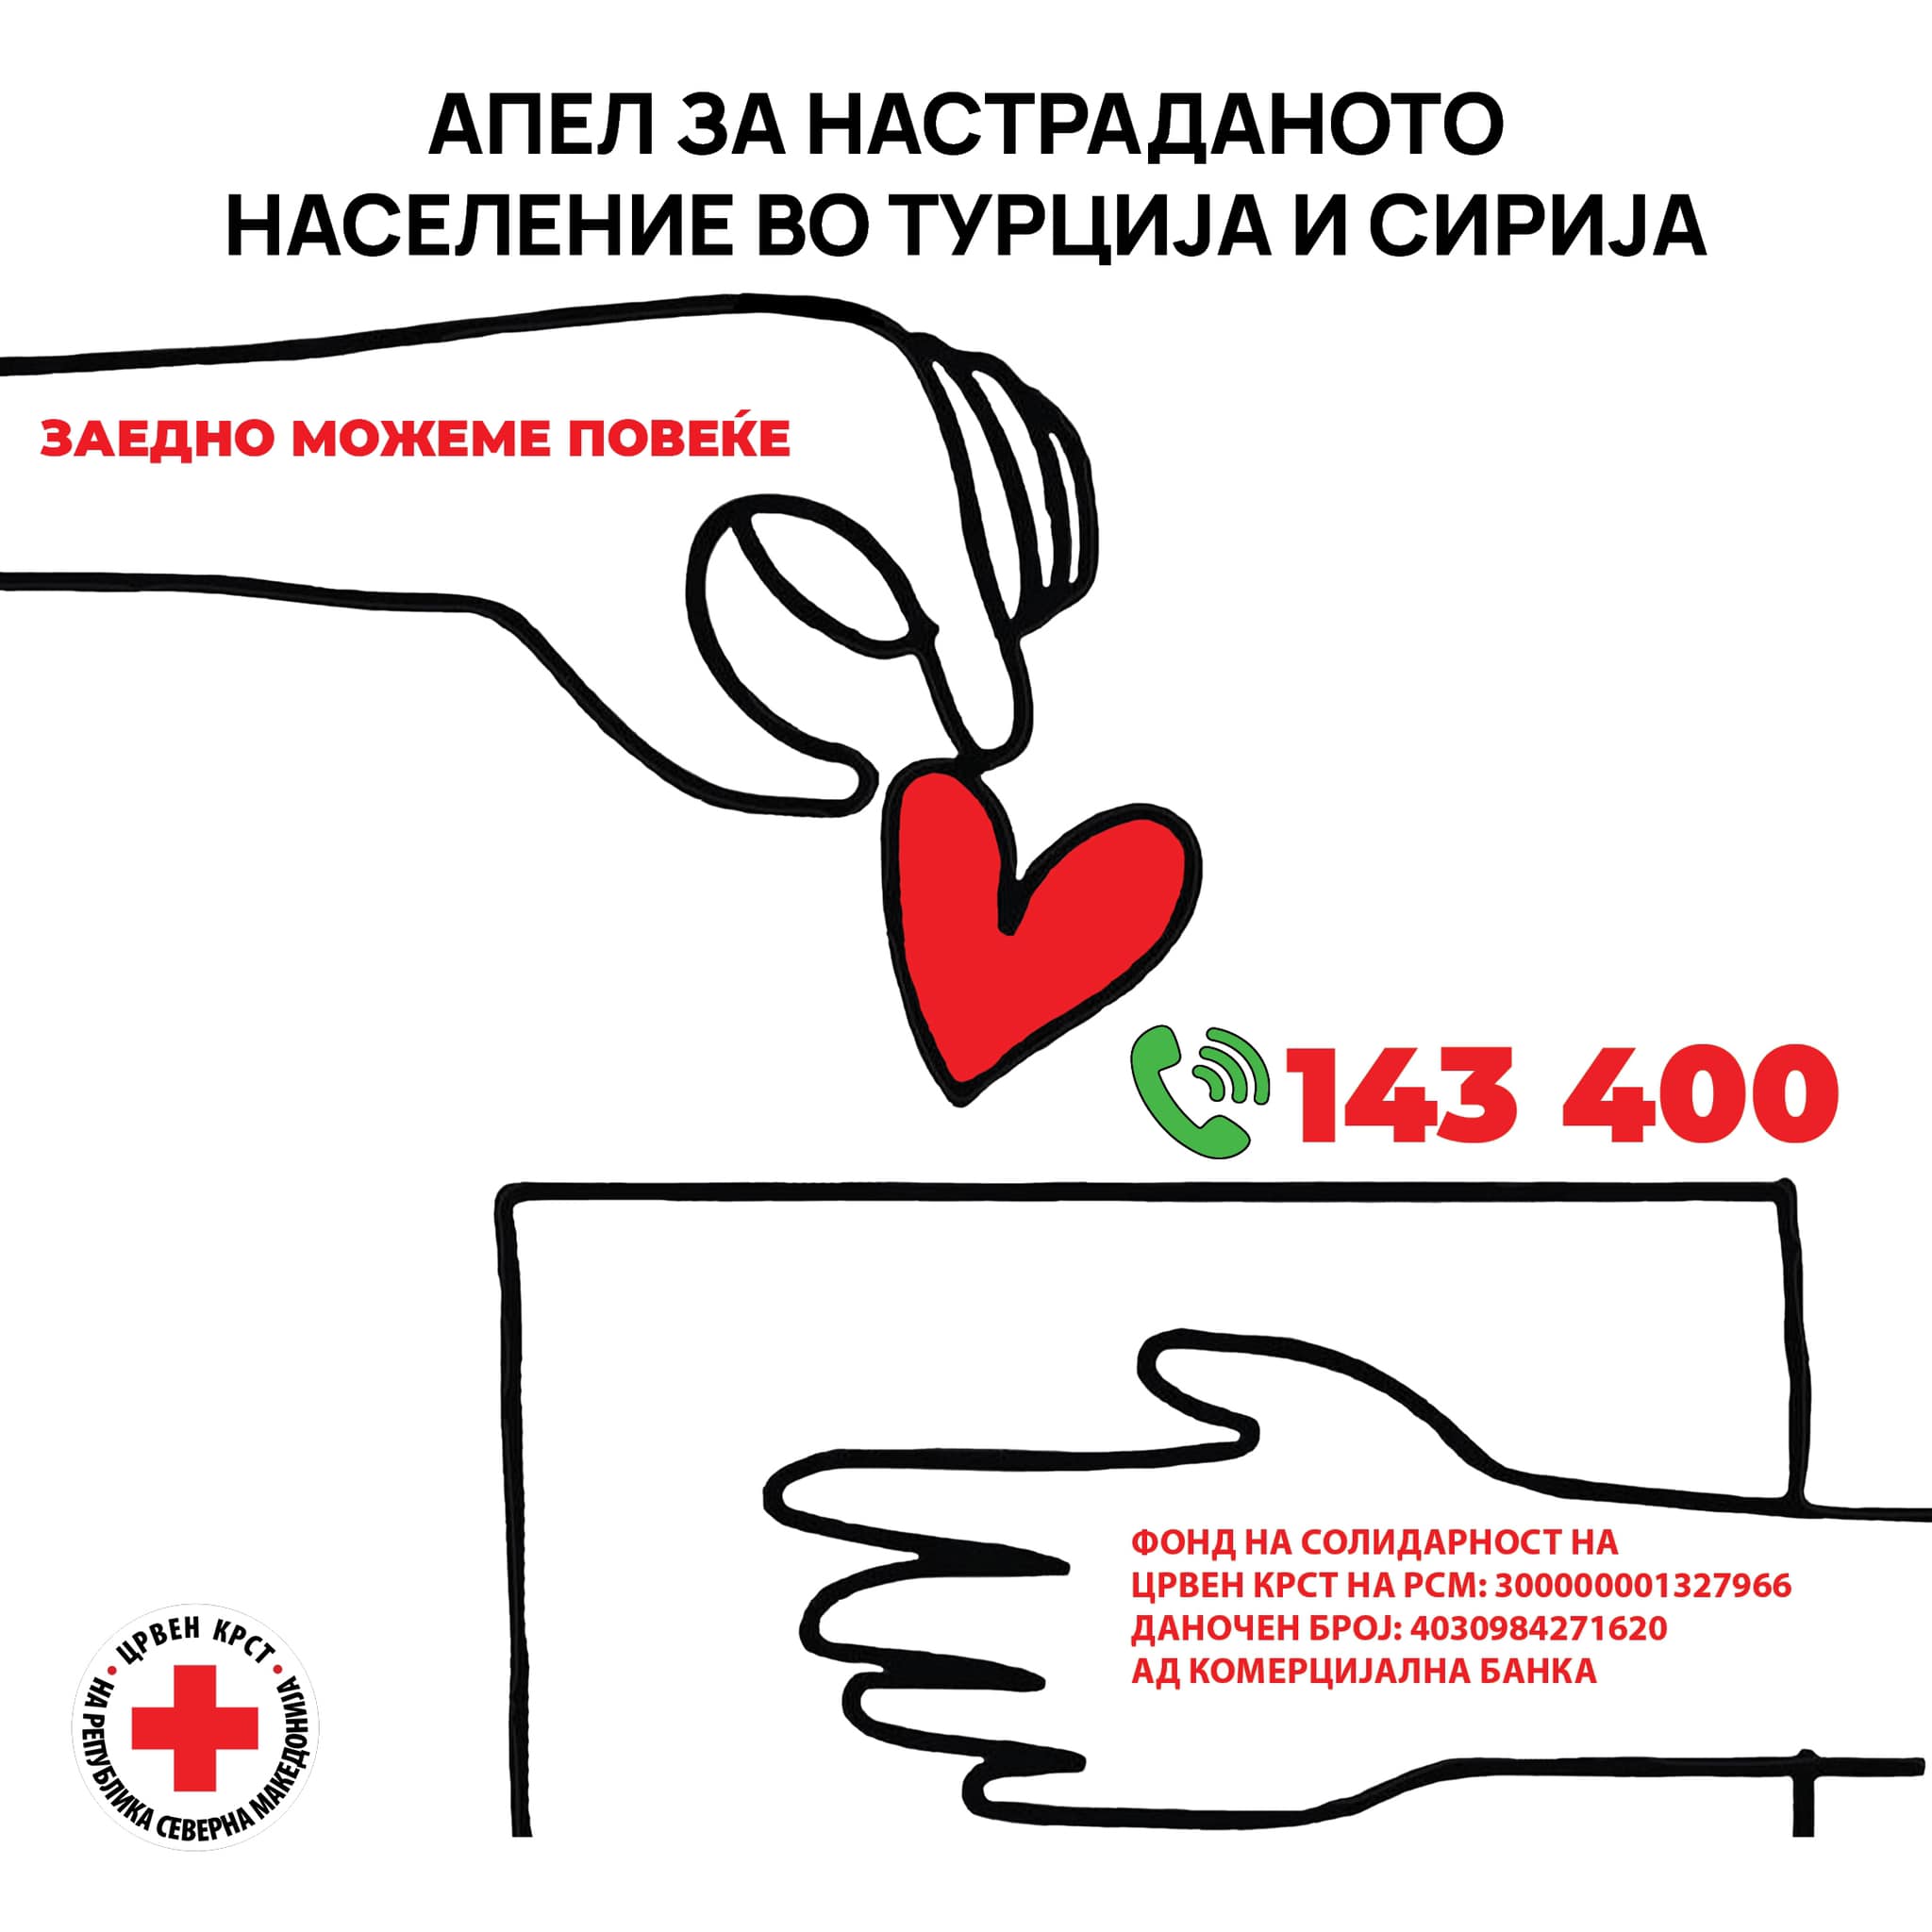 Преку Црвениот крст собрани 30.378.353 денари за настраданите во Турција и Сирија